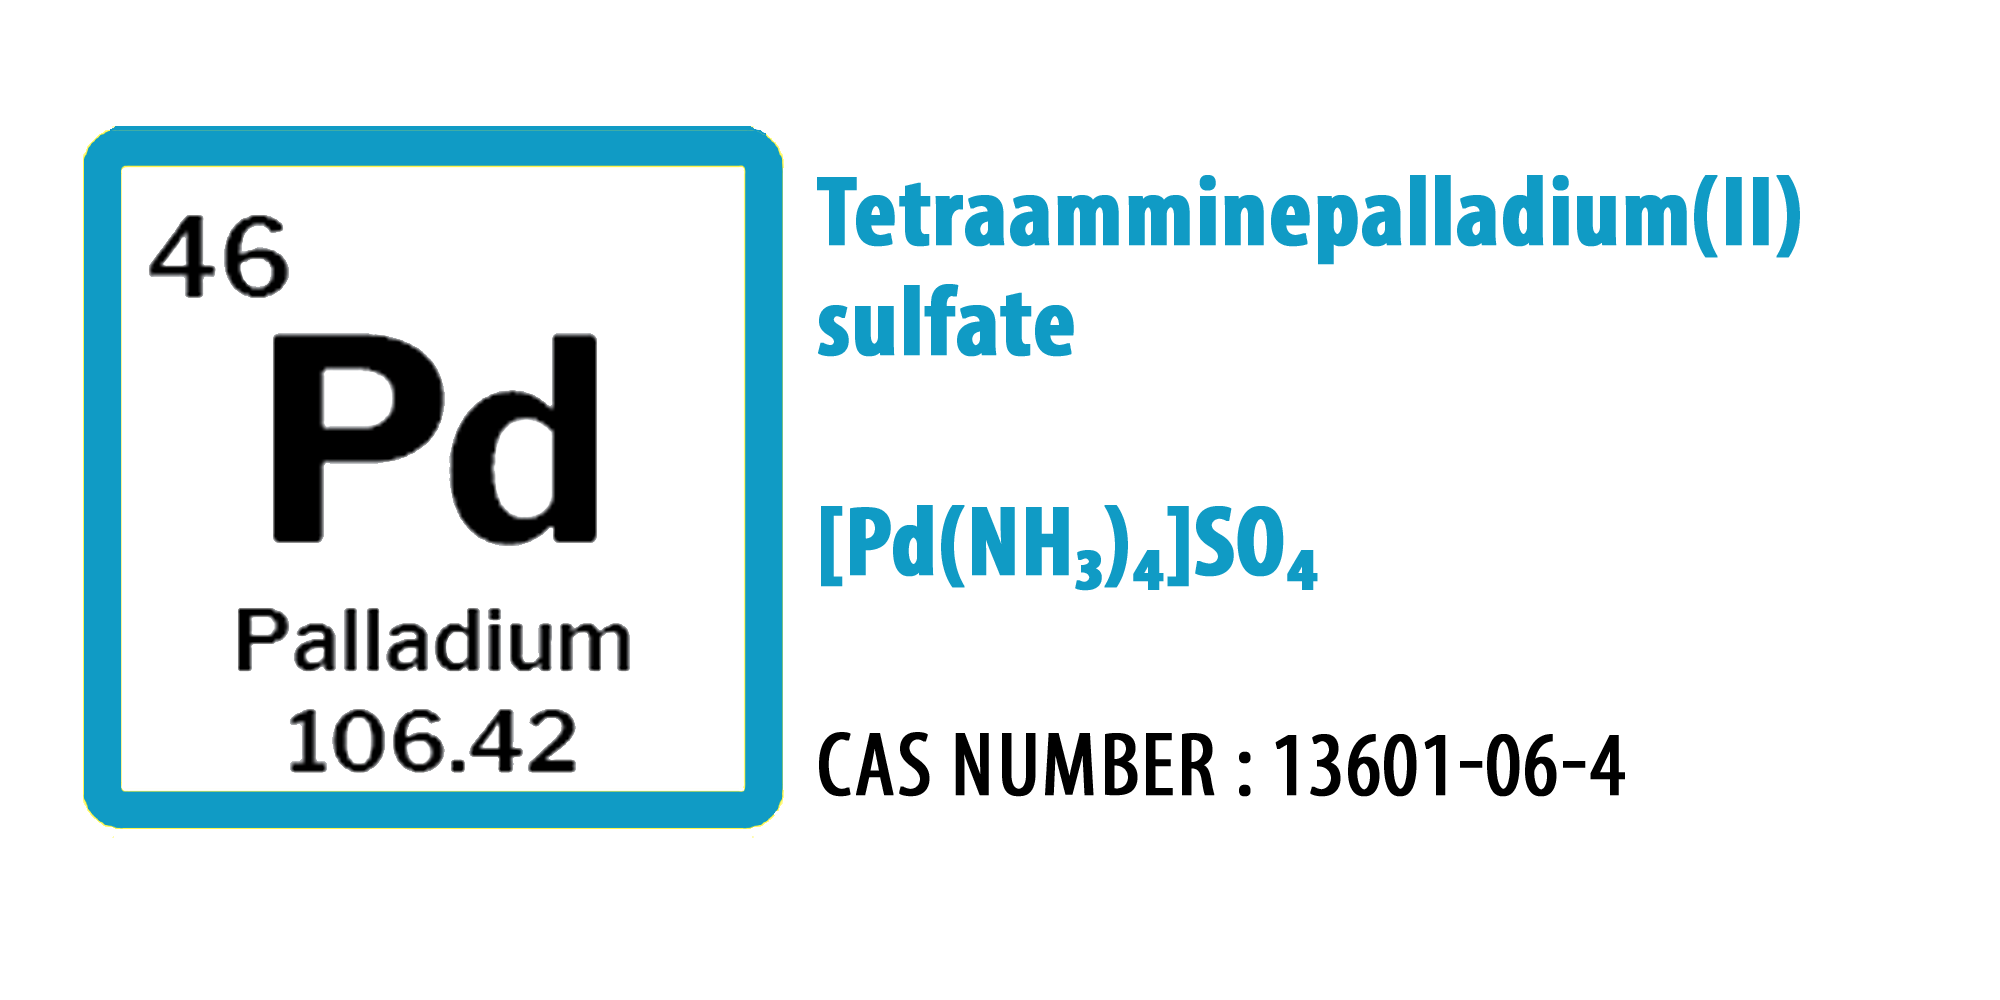 Tetraamminepalladium